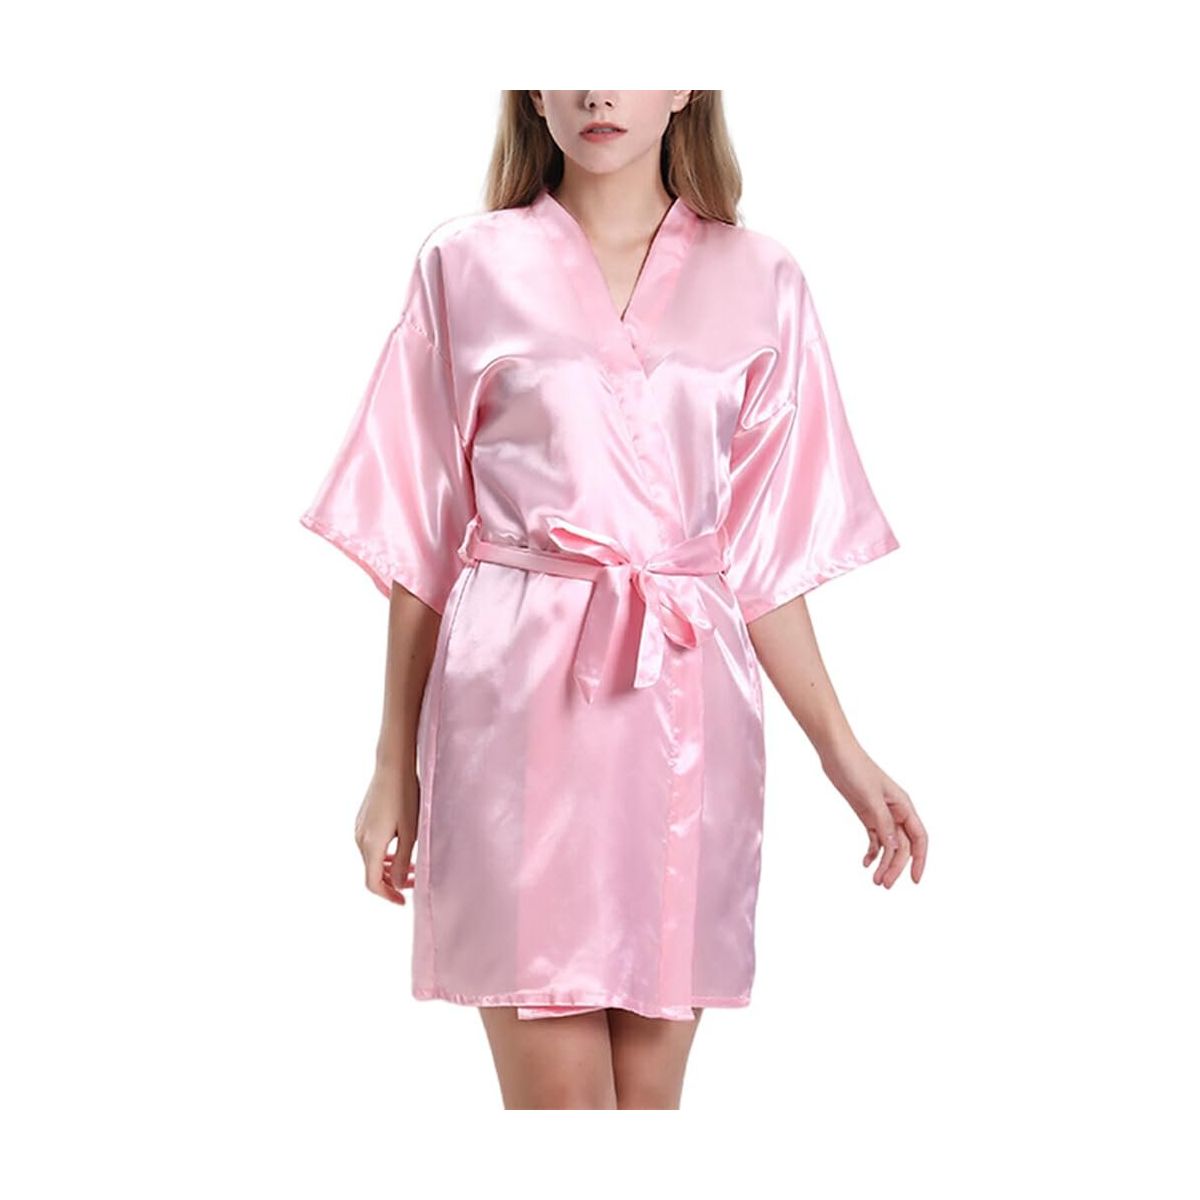 Dantel Nighties Gece Elbisesi Seksi Gecelik Saten Iç çamaşırı Pijama  Nightie V Yaka Gecelik Femme Sleepshirts Ipek Romantik satış < İç çamaşırı  >